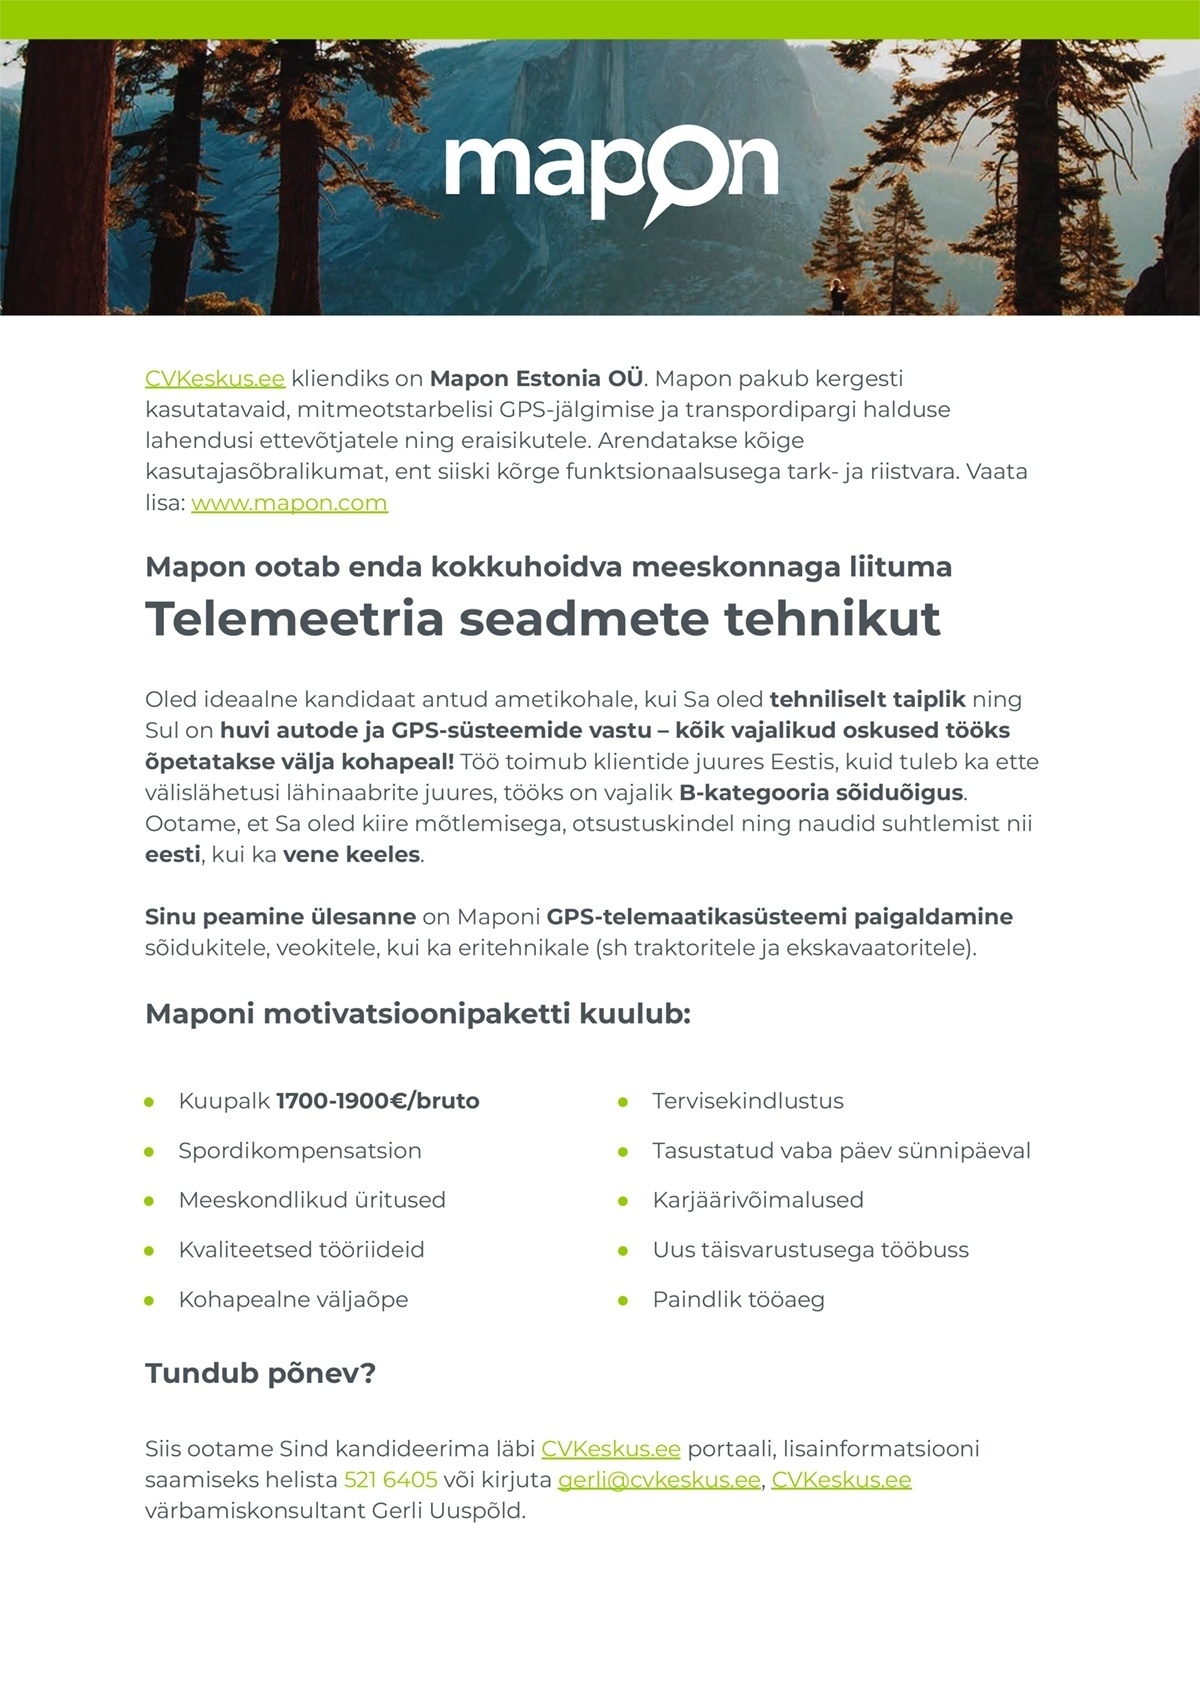 Mapon Estonia OÜ TELEMEETRIA SEADMETE TEHNIK